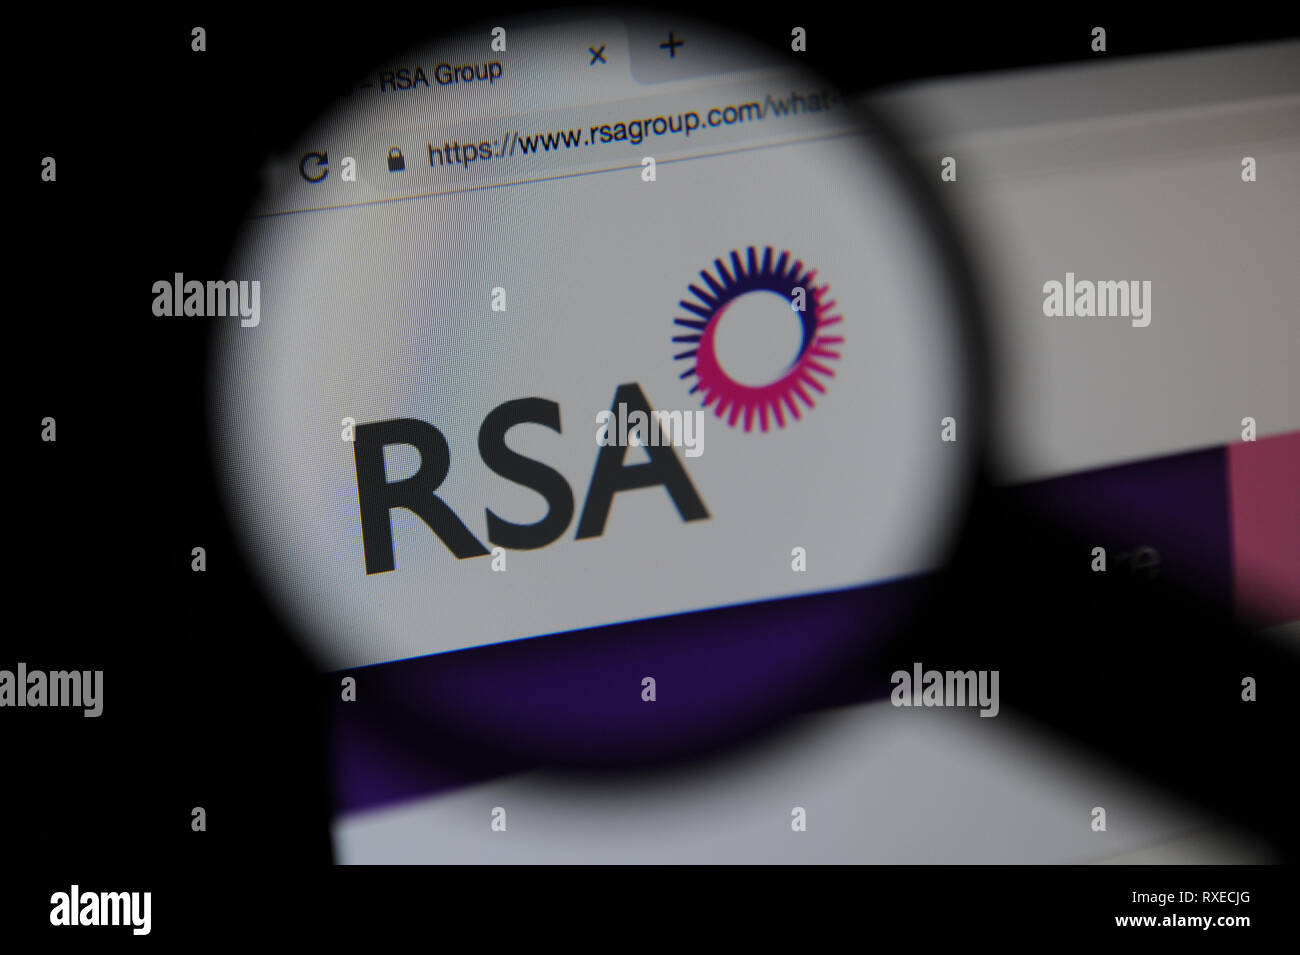 El sitio web de RSA vistos a través de una lupa Foto de stock